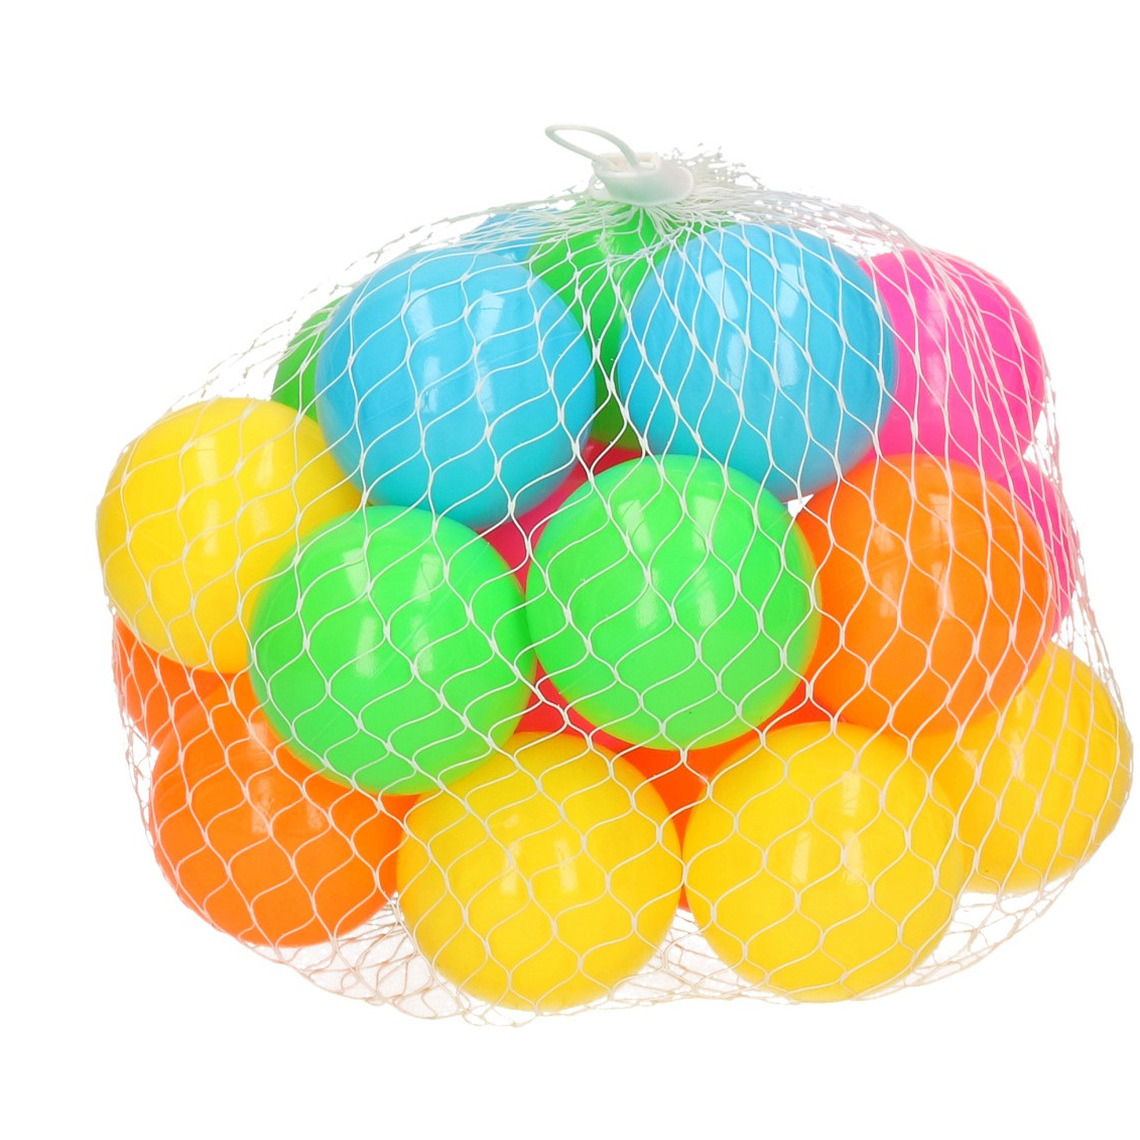 25x Ballenbak ballen neon kleuren 6 cm speelgoed